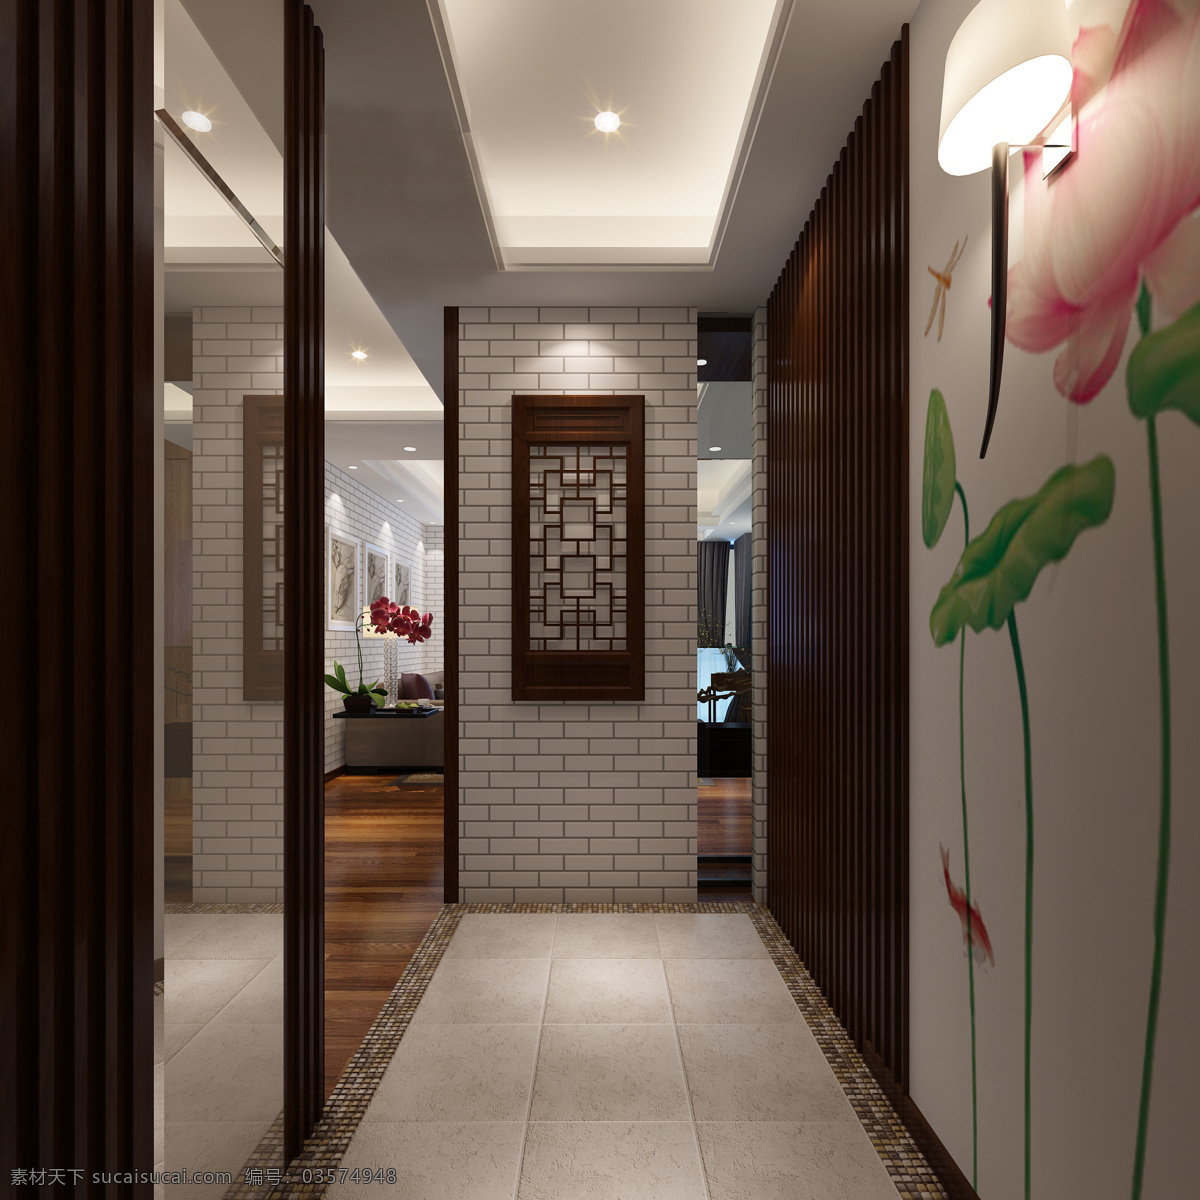 中式 玄关 效果图 新古典 走廊 室内 立体 家居设计 3d设计